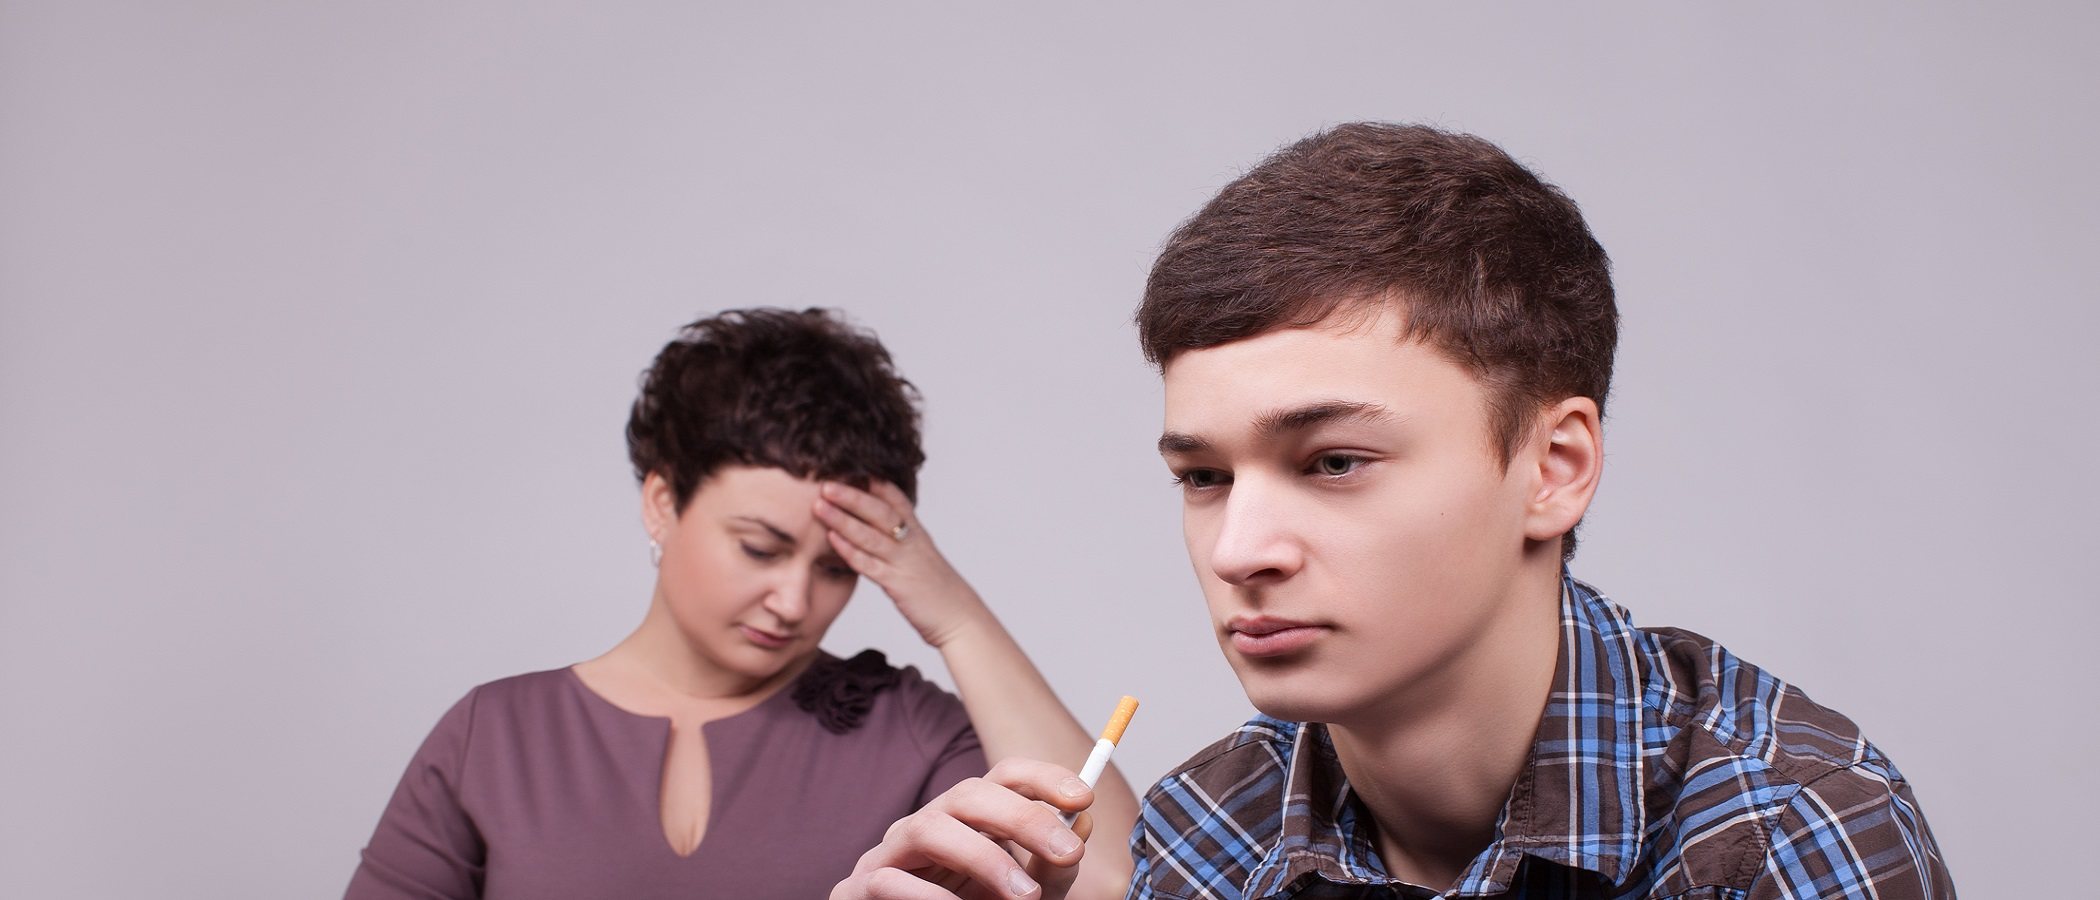 Hijos adolescentes desobedientes: qué debes decirles